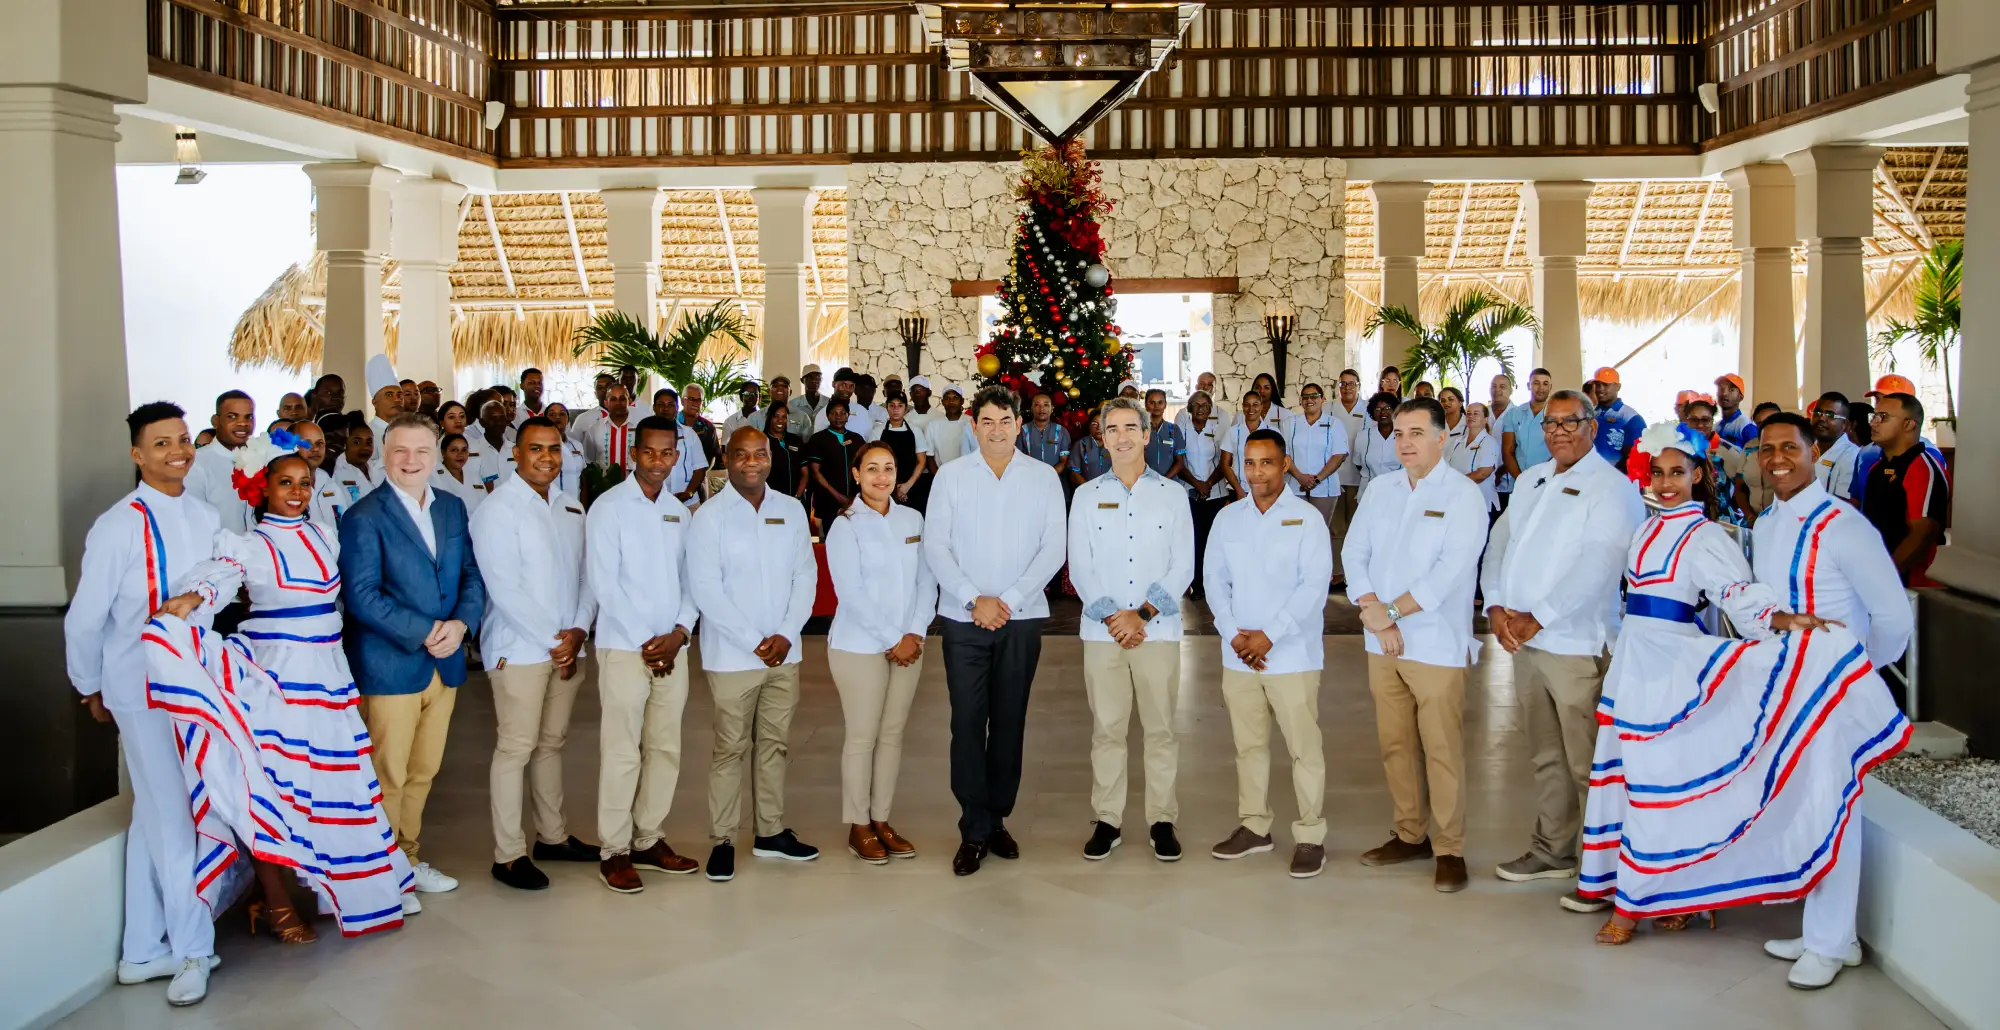 Abre nuevo hotel Sunscape Dominicus La Romana